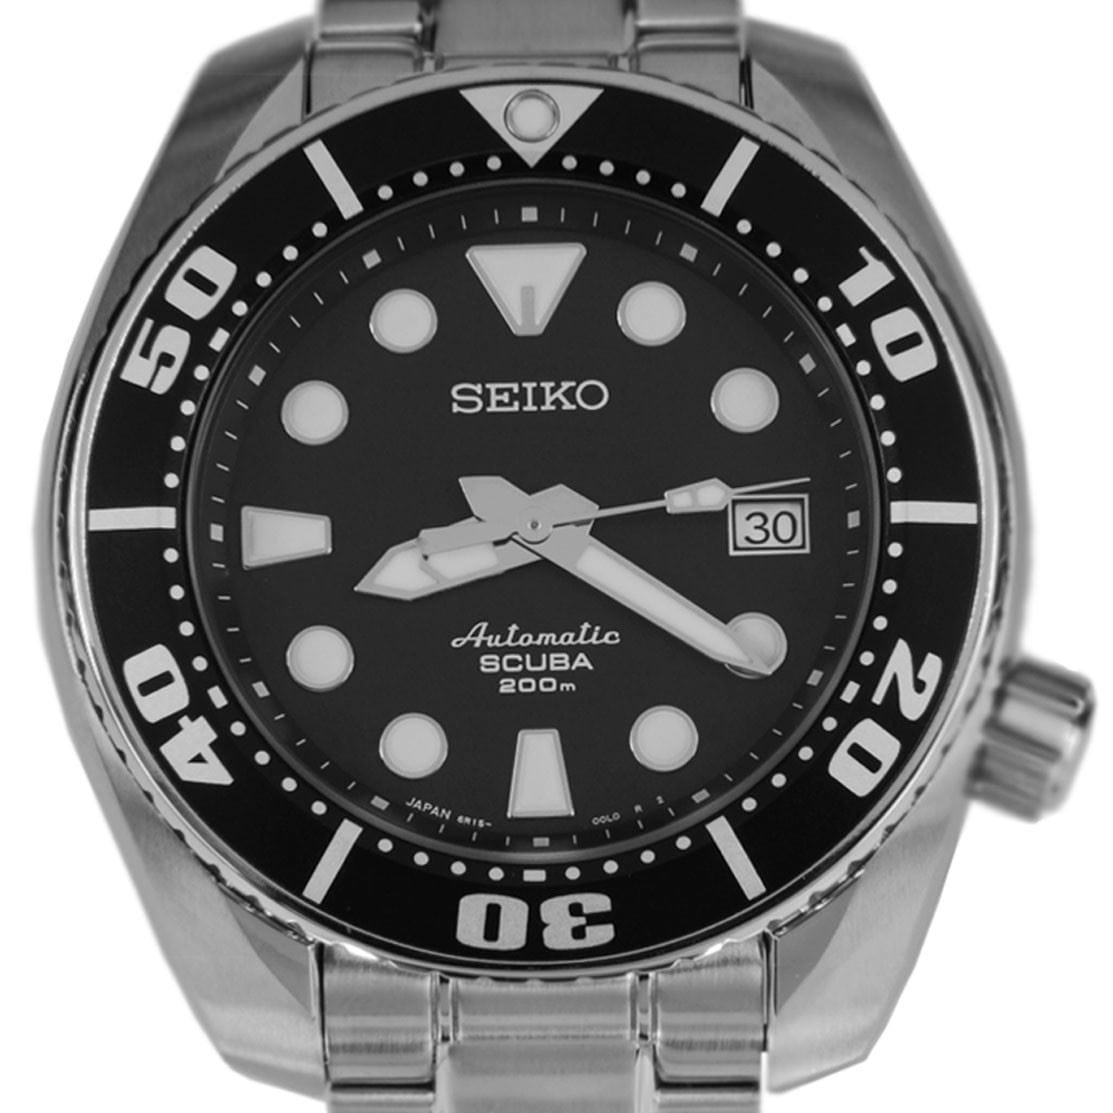 SBDC001J1 SBDC00 Seiko Prospex Automatic Divers Watch